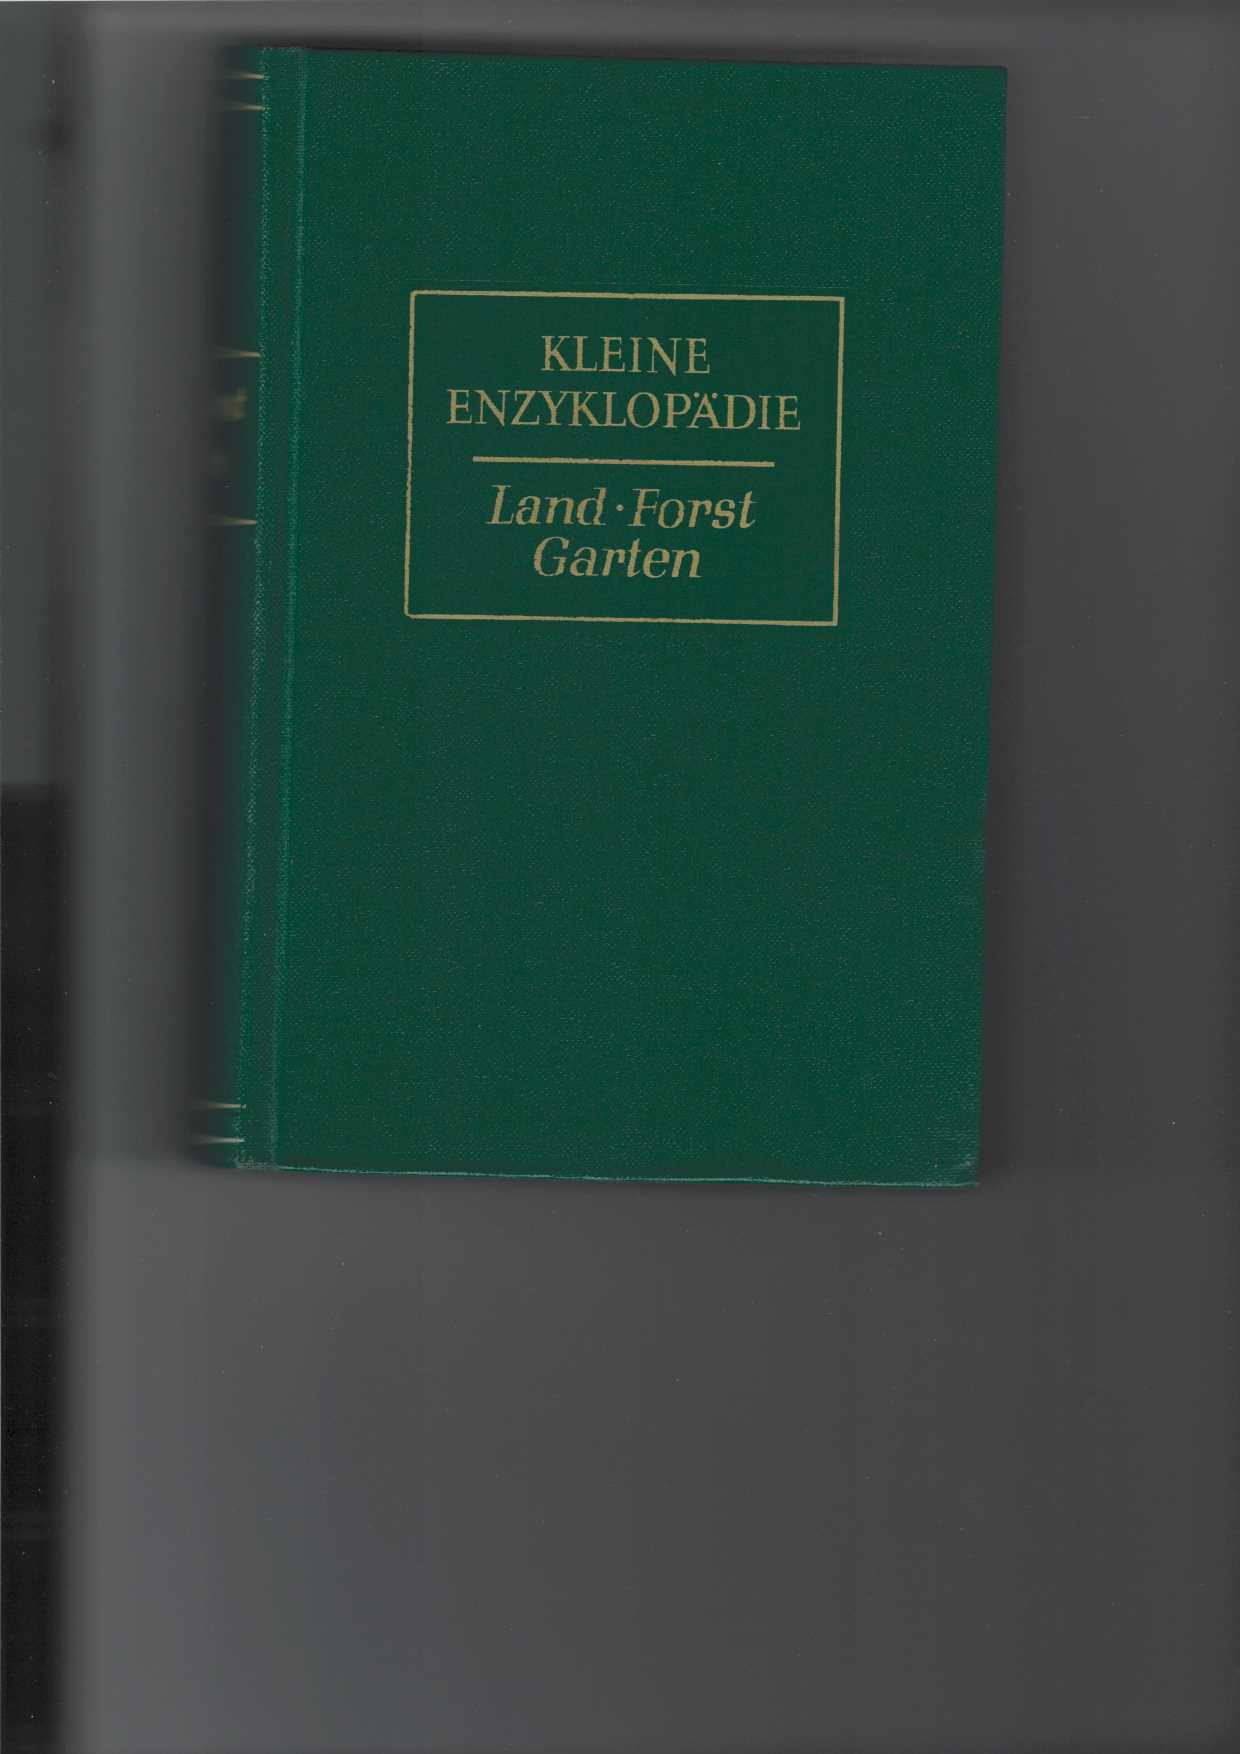 Kleine Enzyklopädie : Land - Forst - Garten.